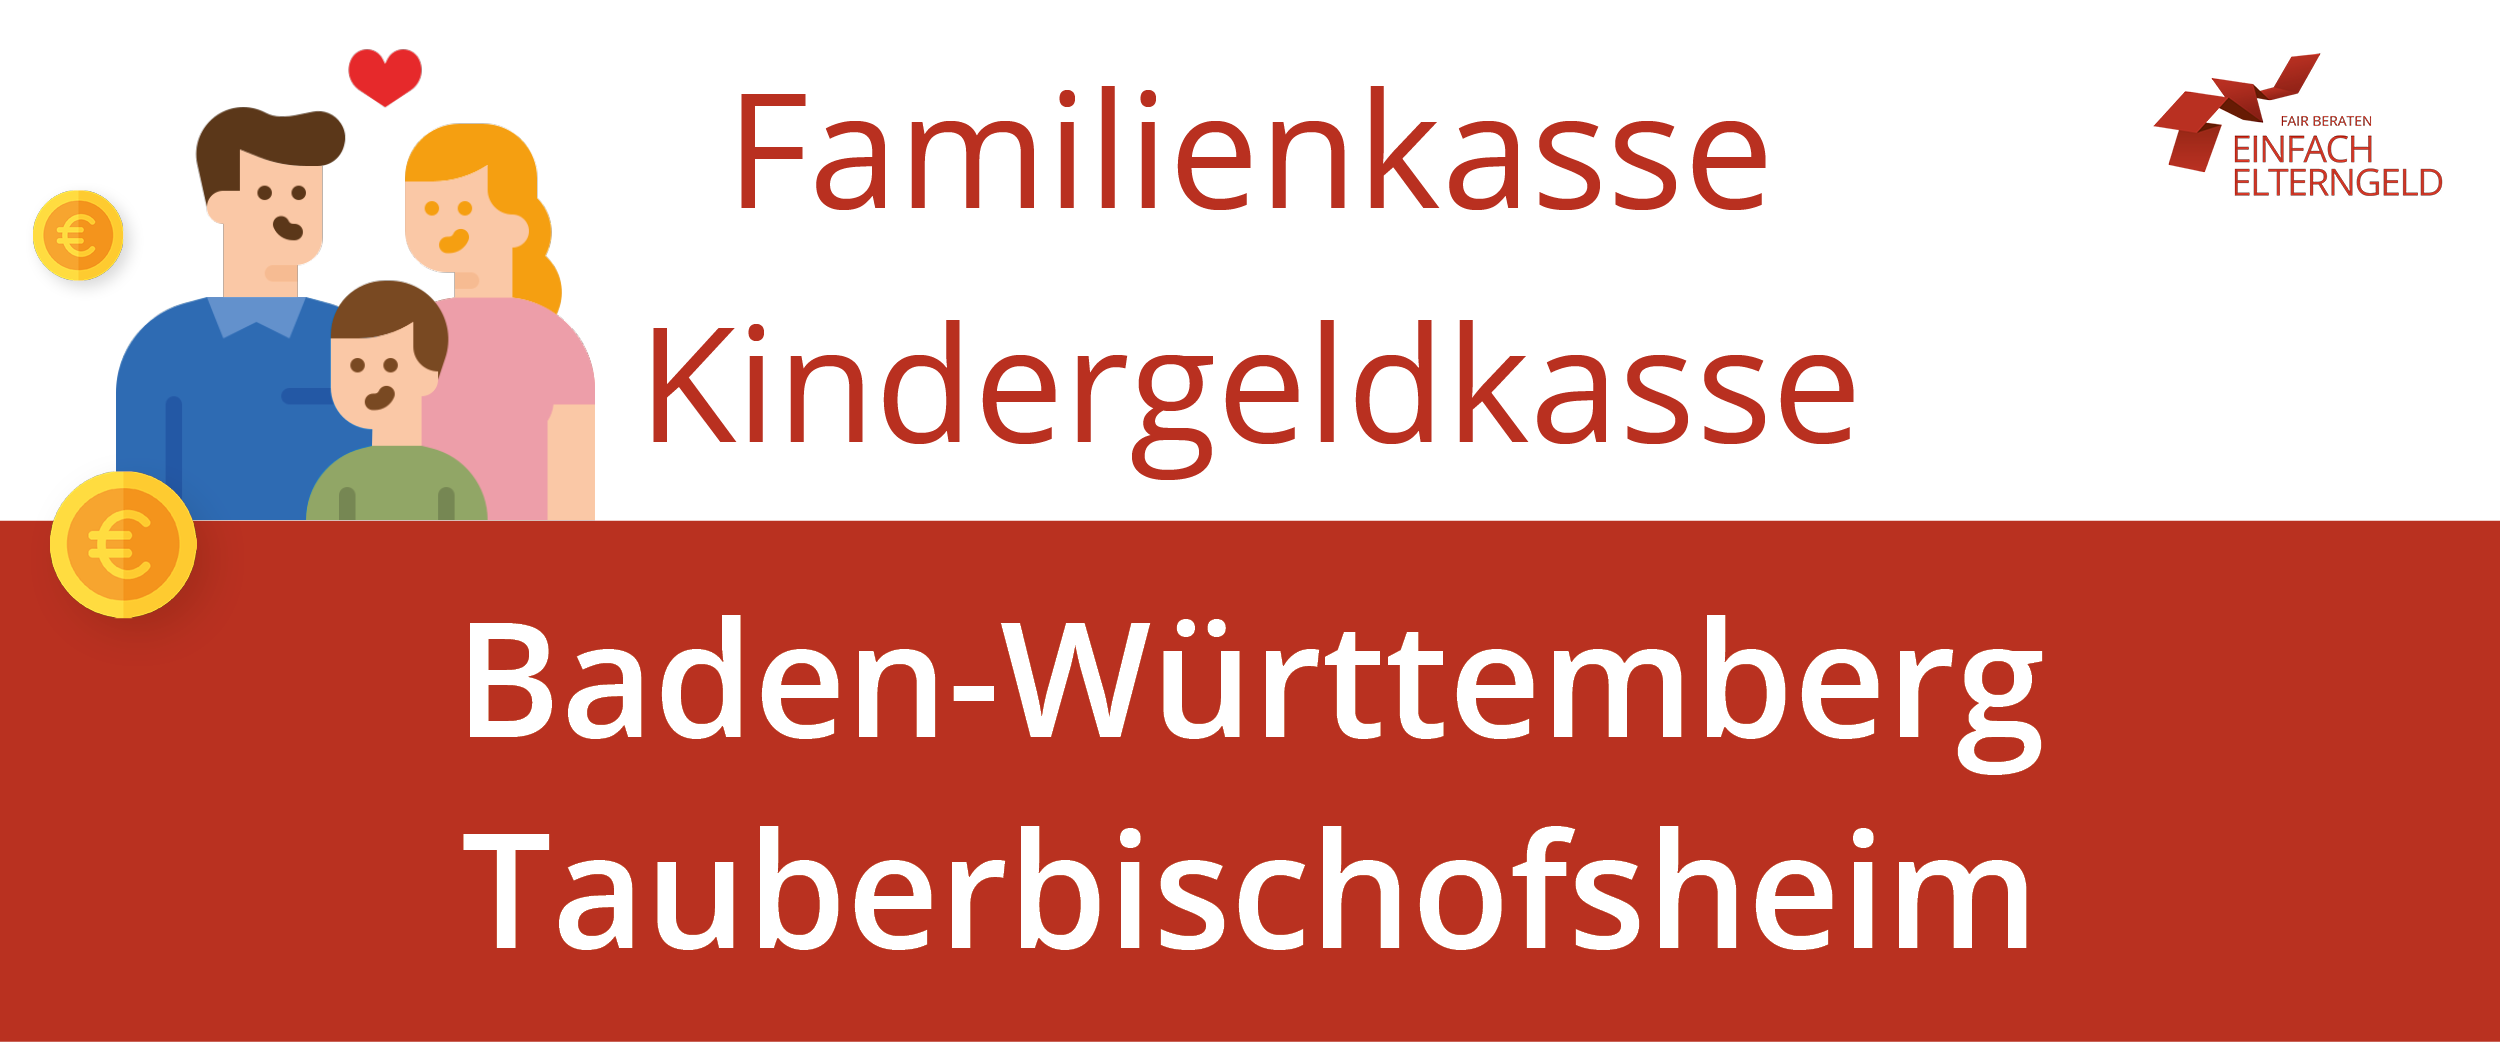 Familienkasse Kindergeldkasse Baden-Württemberg Tauberbischofsheim - So erreichen Sie Ihre Familienkasse.